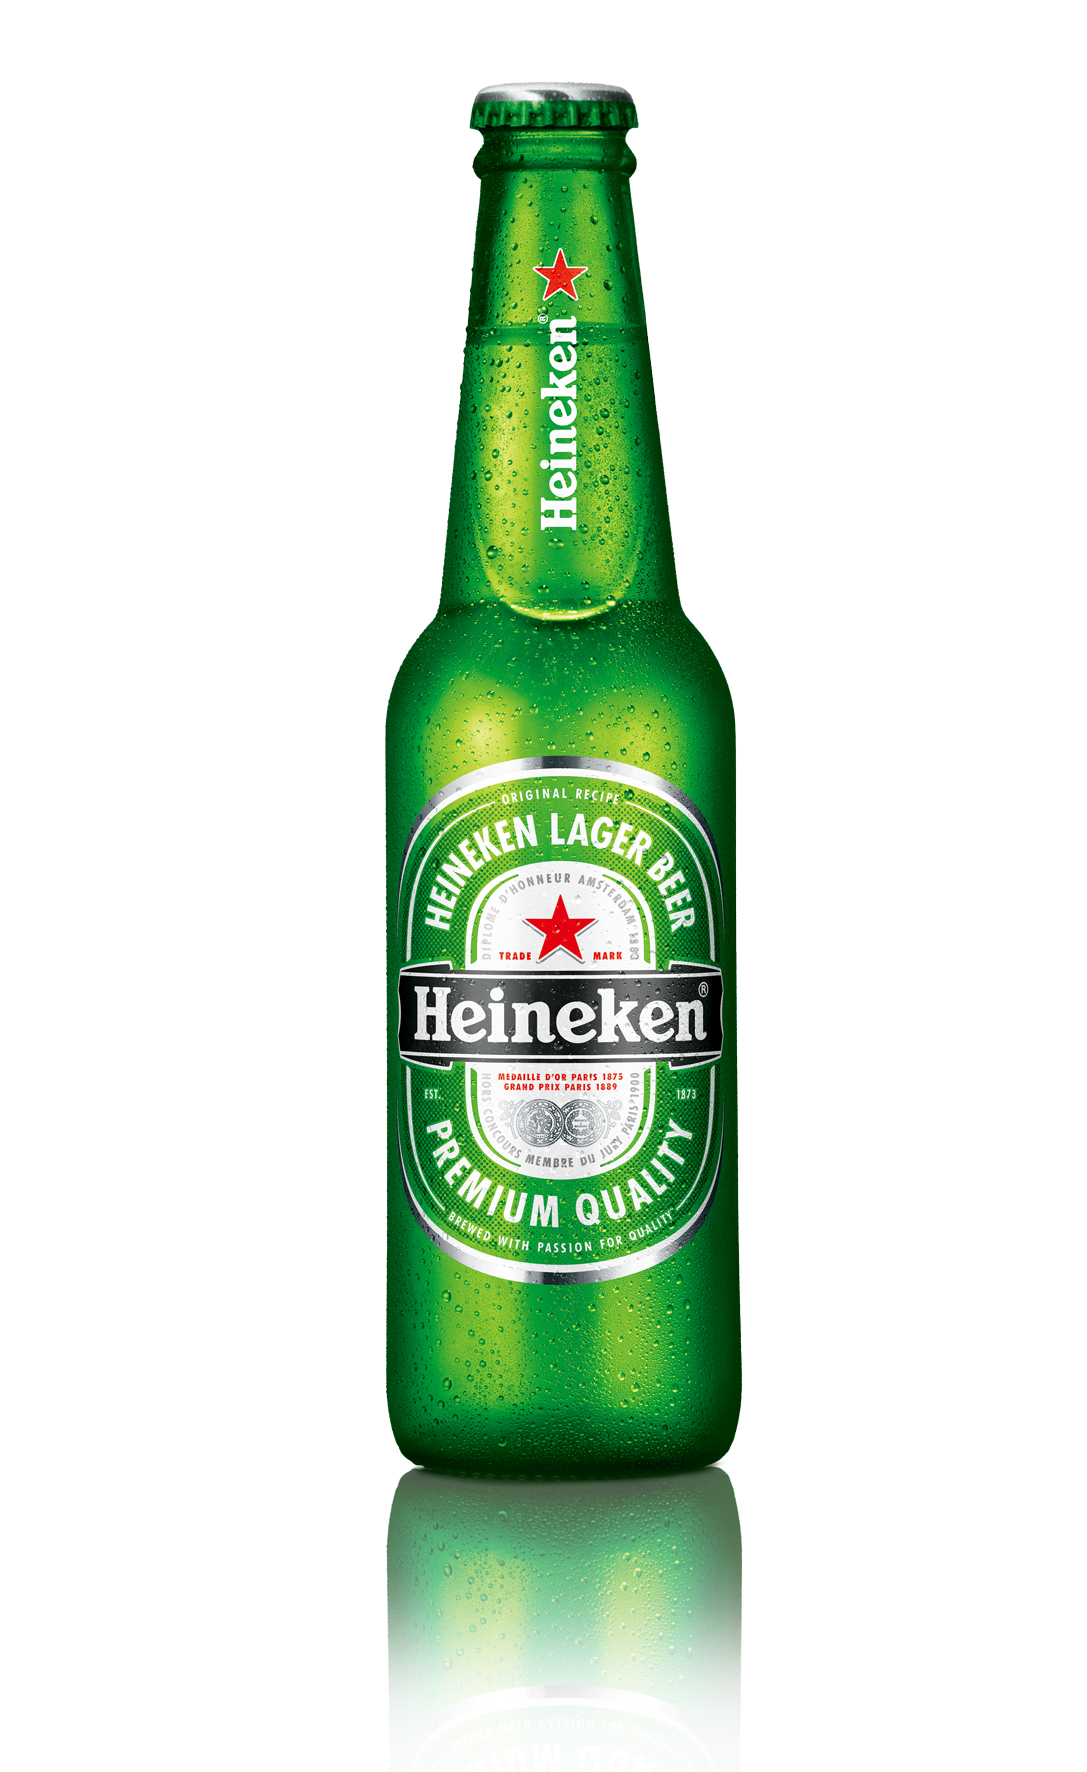 Heineken beer | Beverages | Pinterest | Heineken, Beverage and Liquor